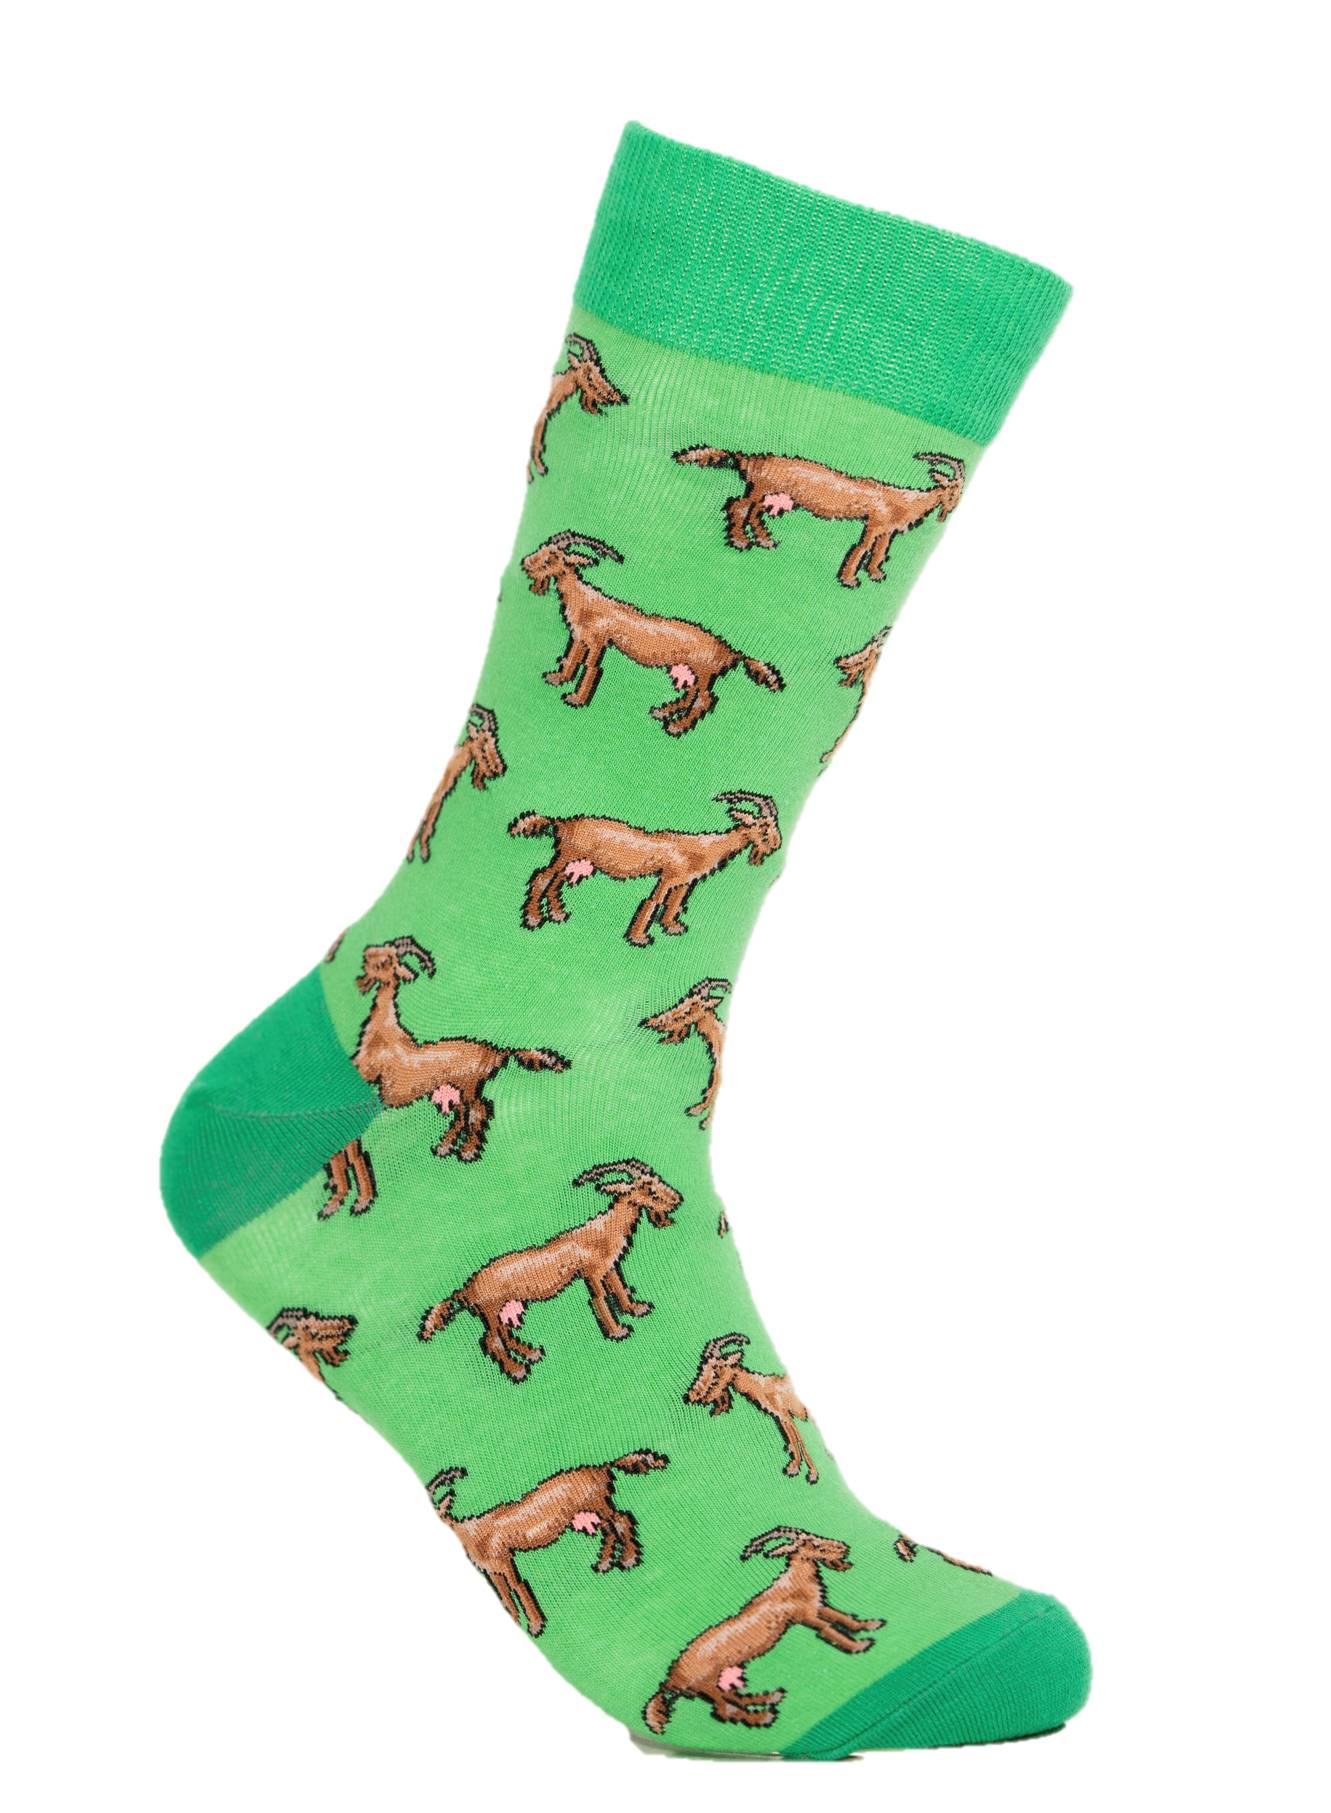 Goat Novelty Socks